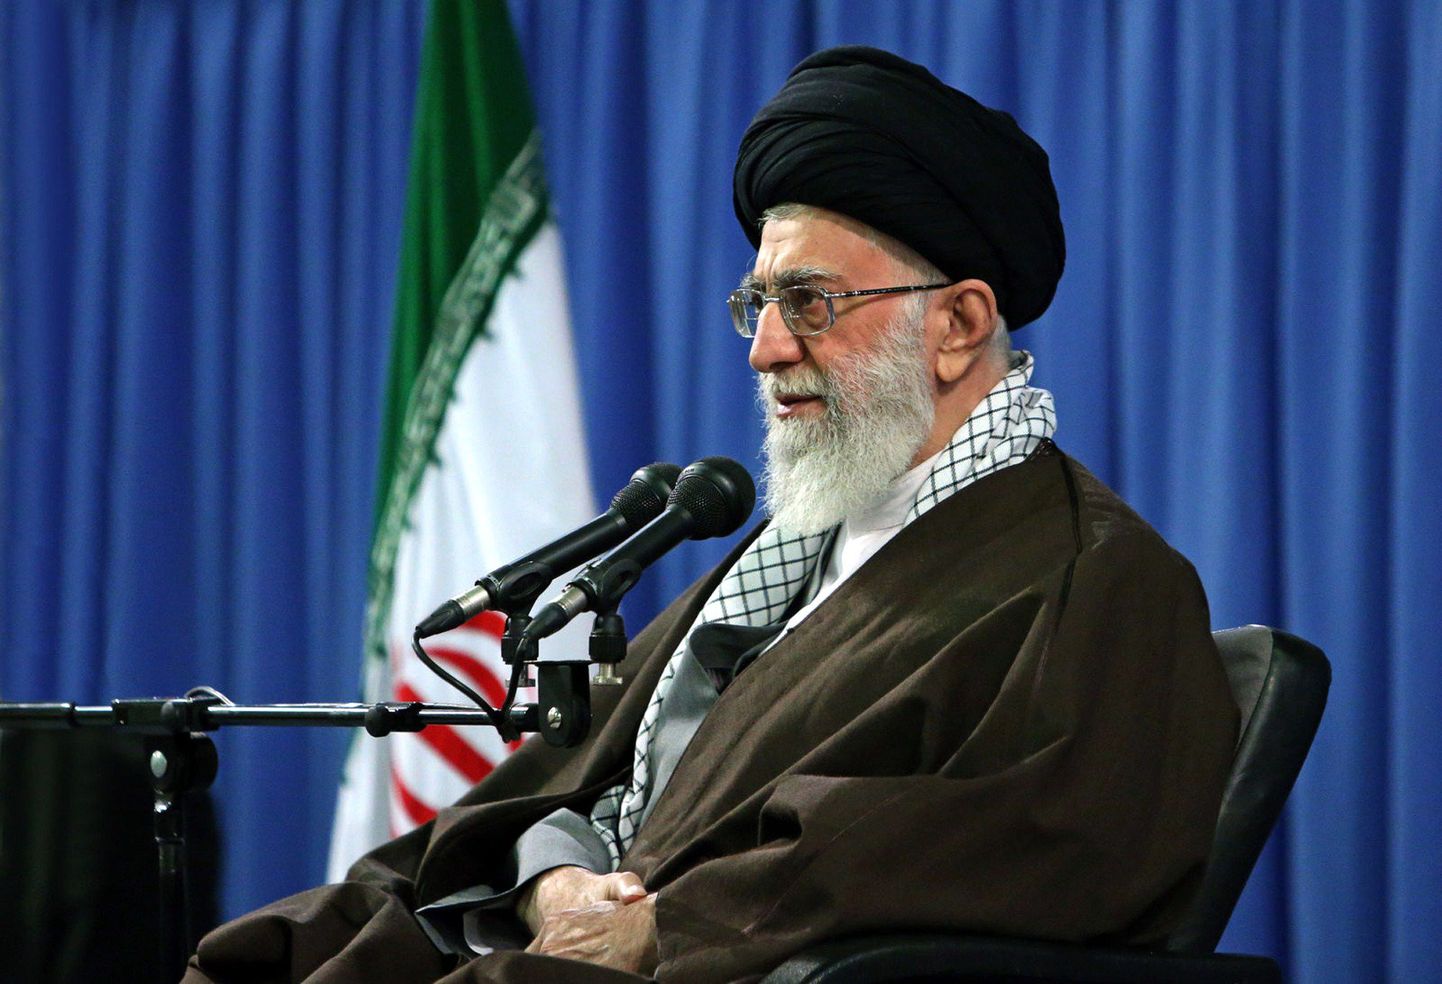 Iraani kõrgeim juht ajatolla Ali Khamenei värskel pildil temast.